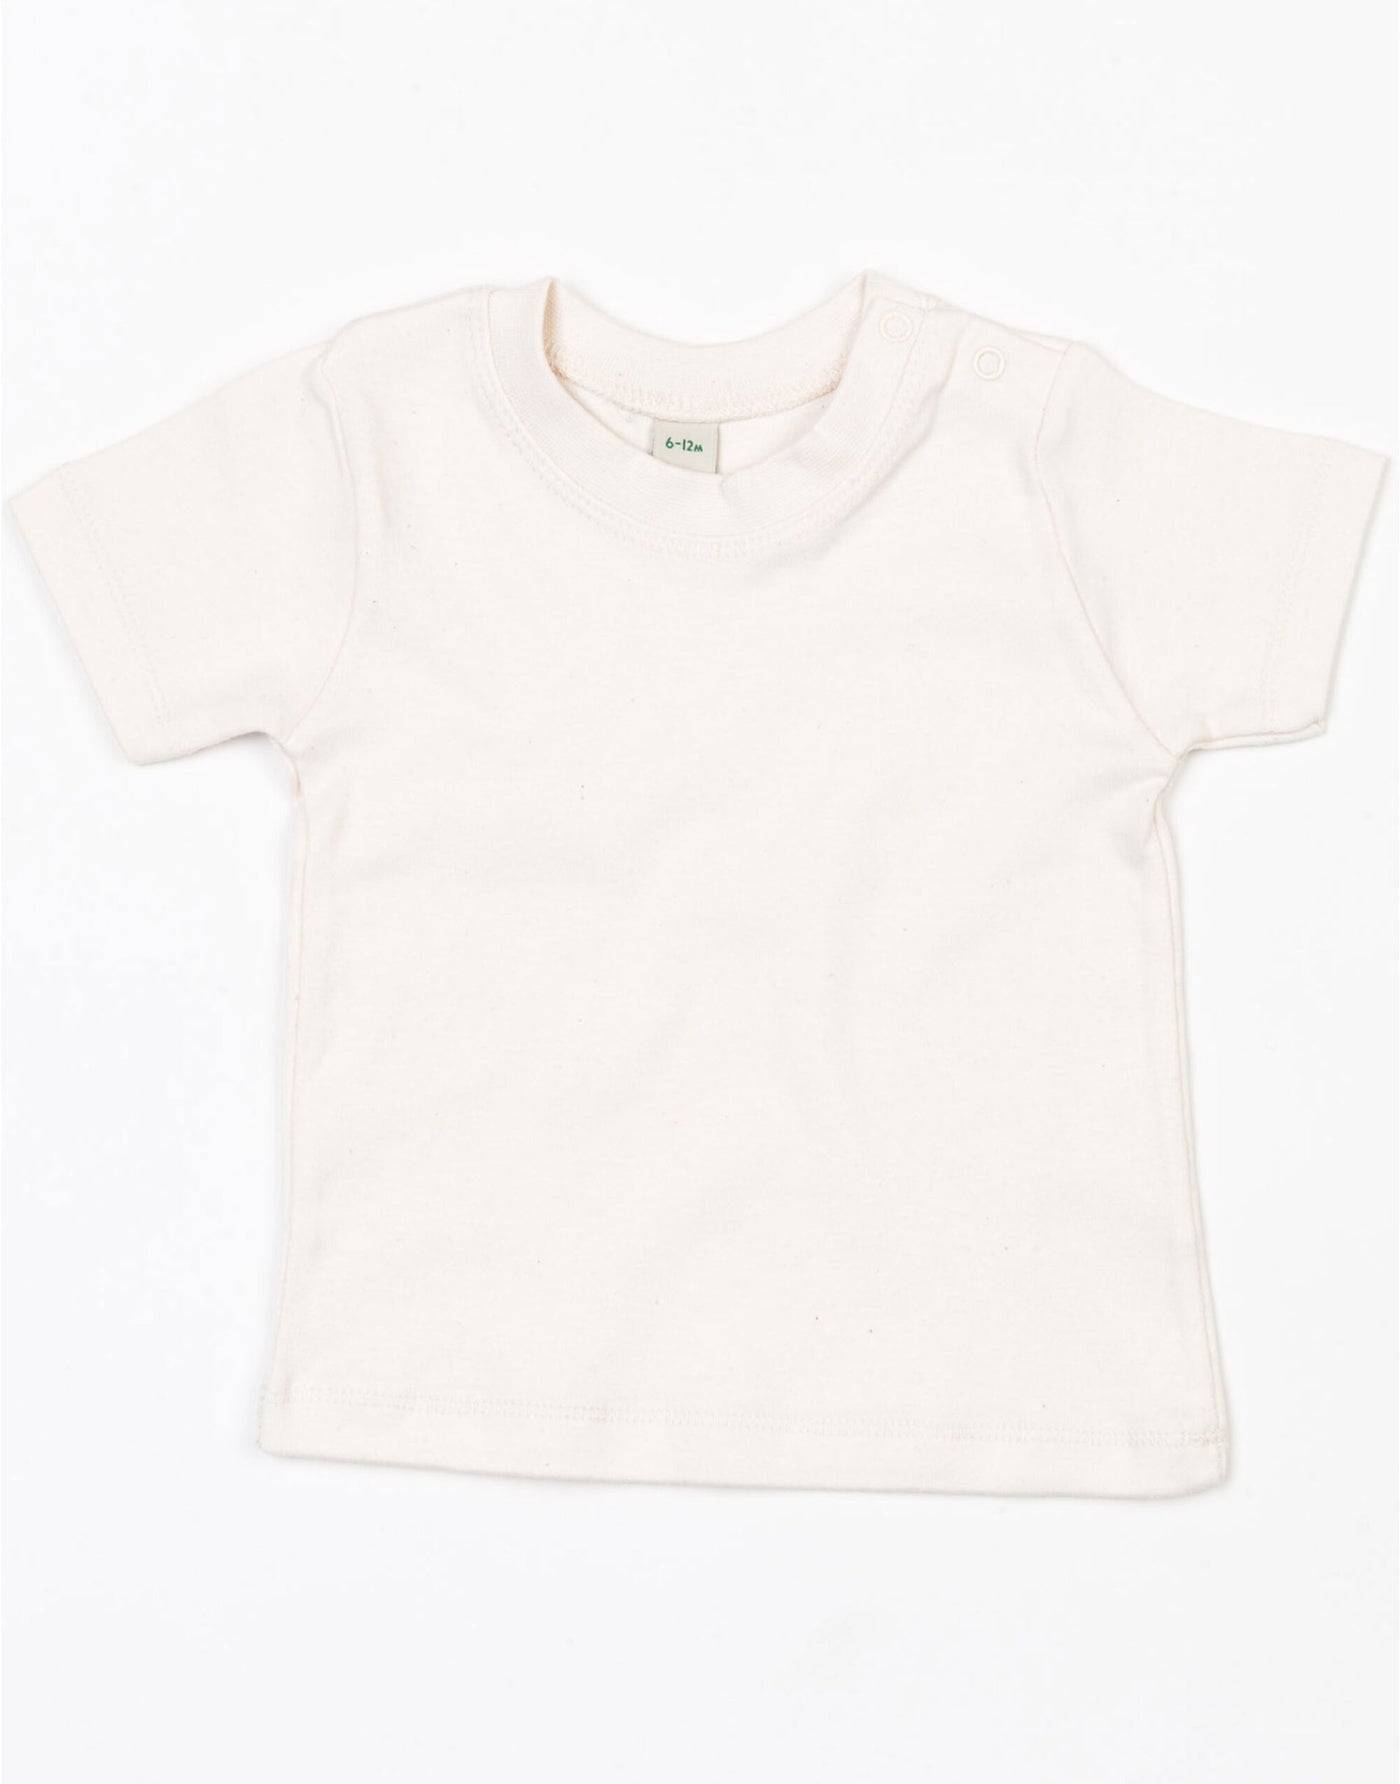 Baby Natural T-Shirt